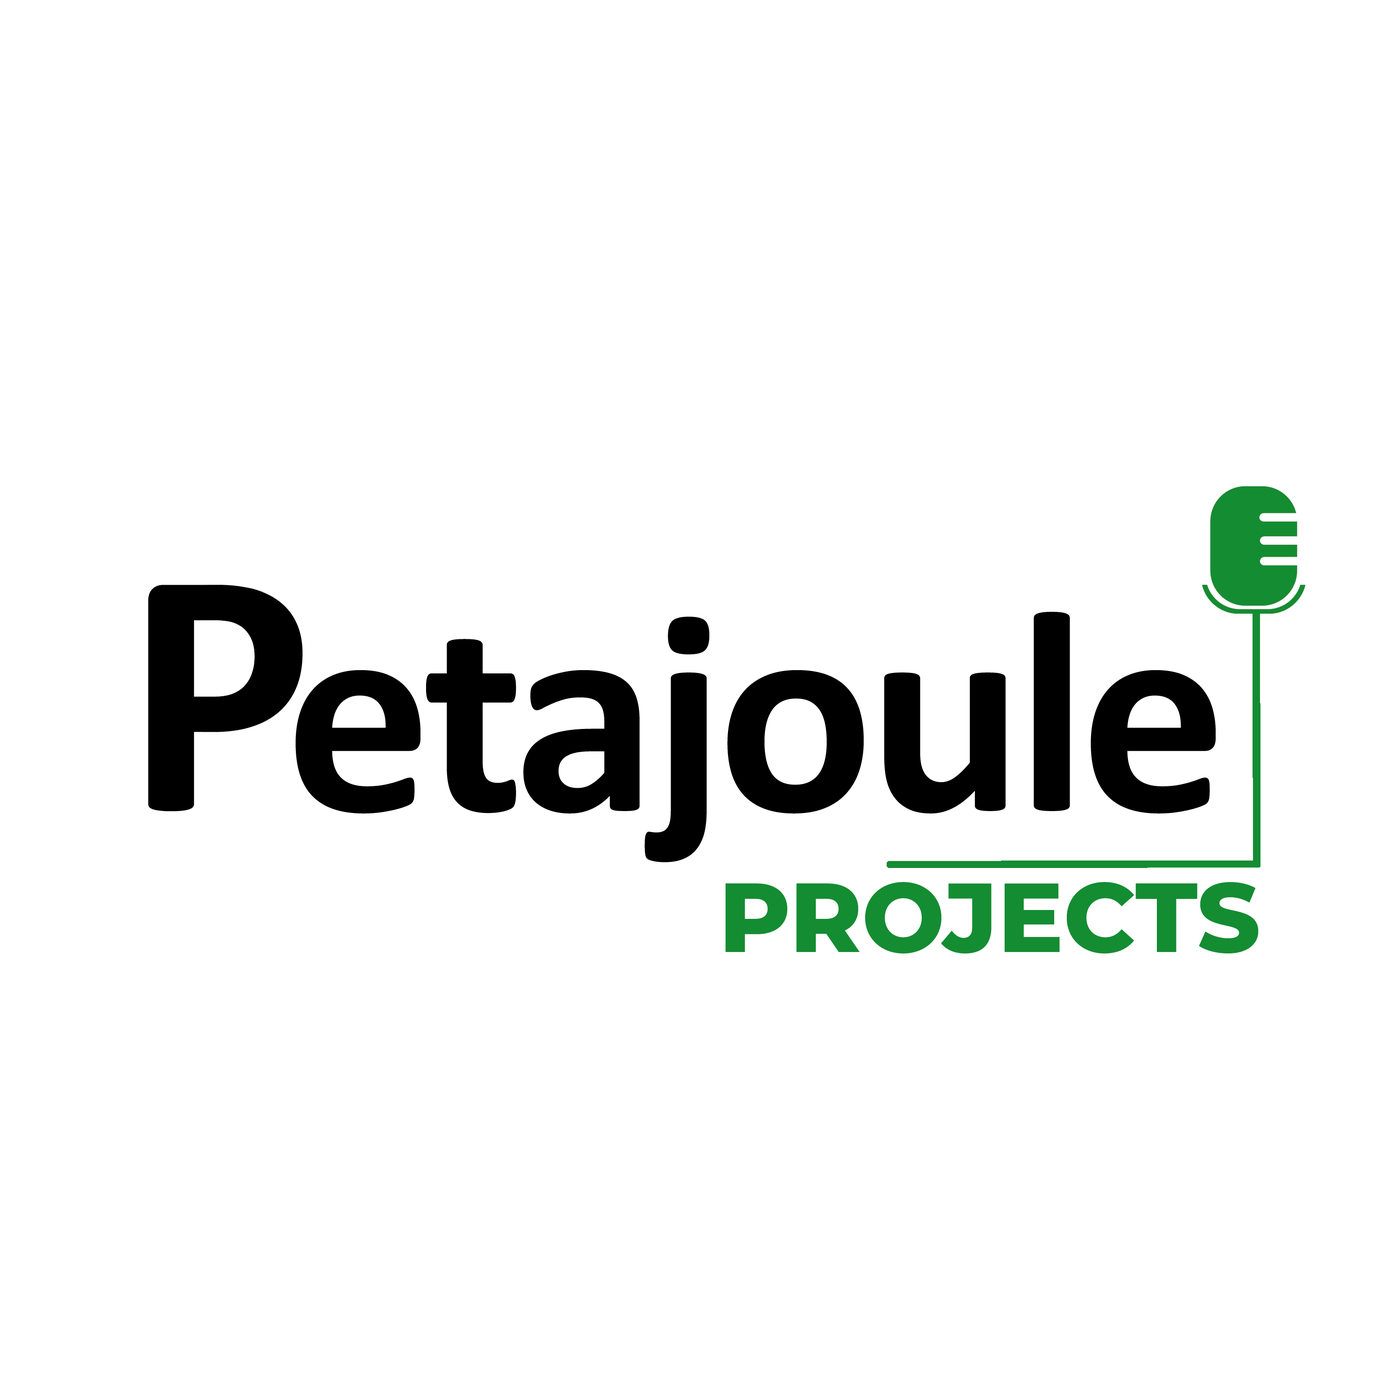 Petajoule Projects